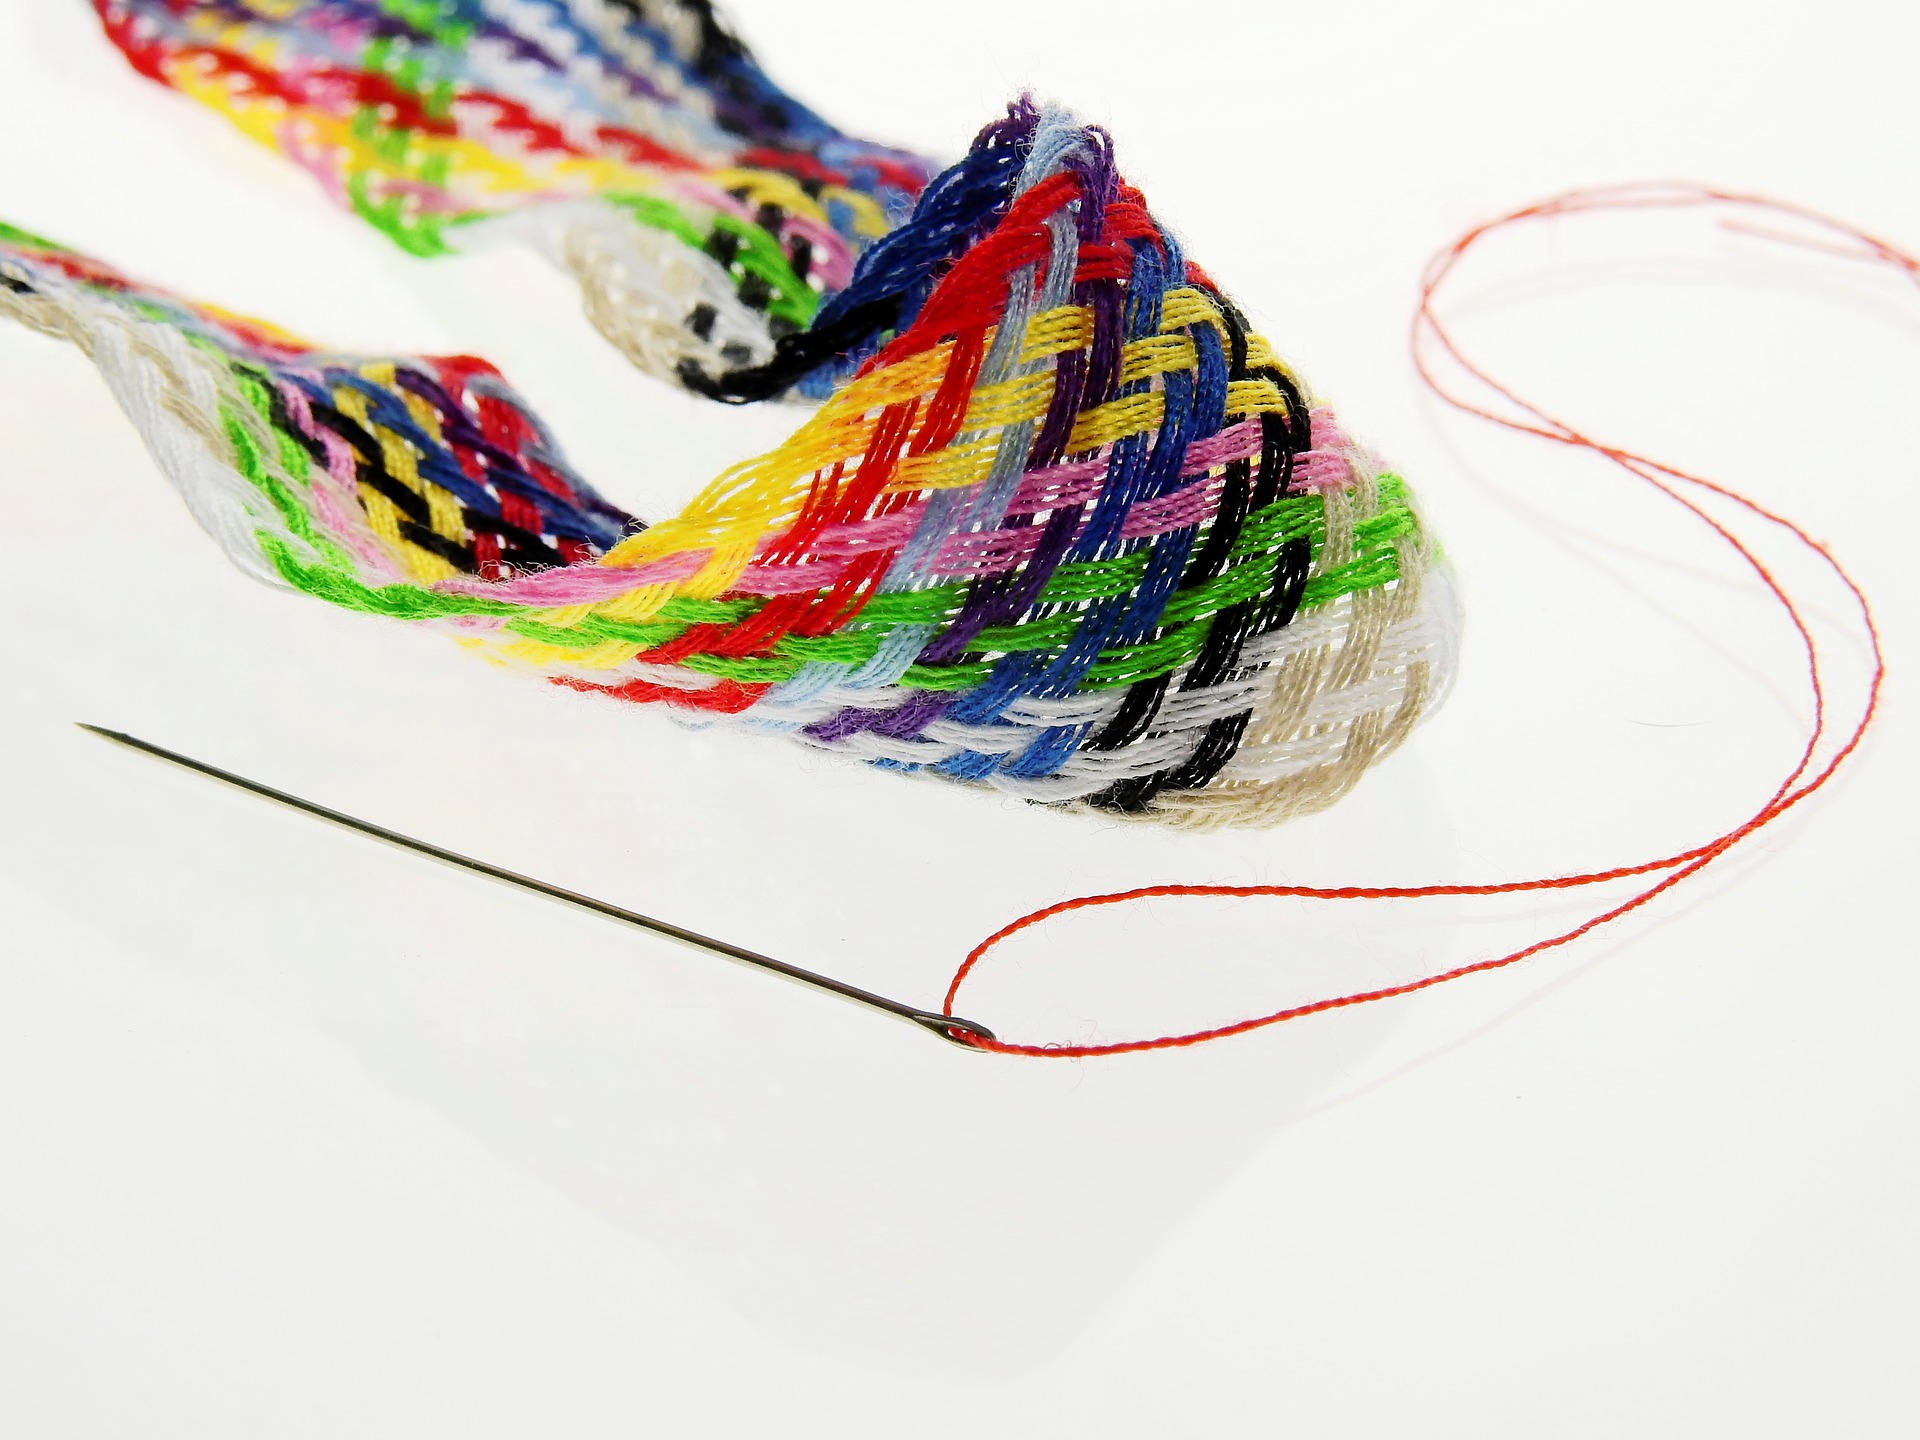 Colorful yarn, thread, sew